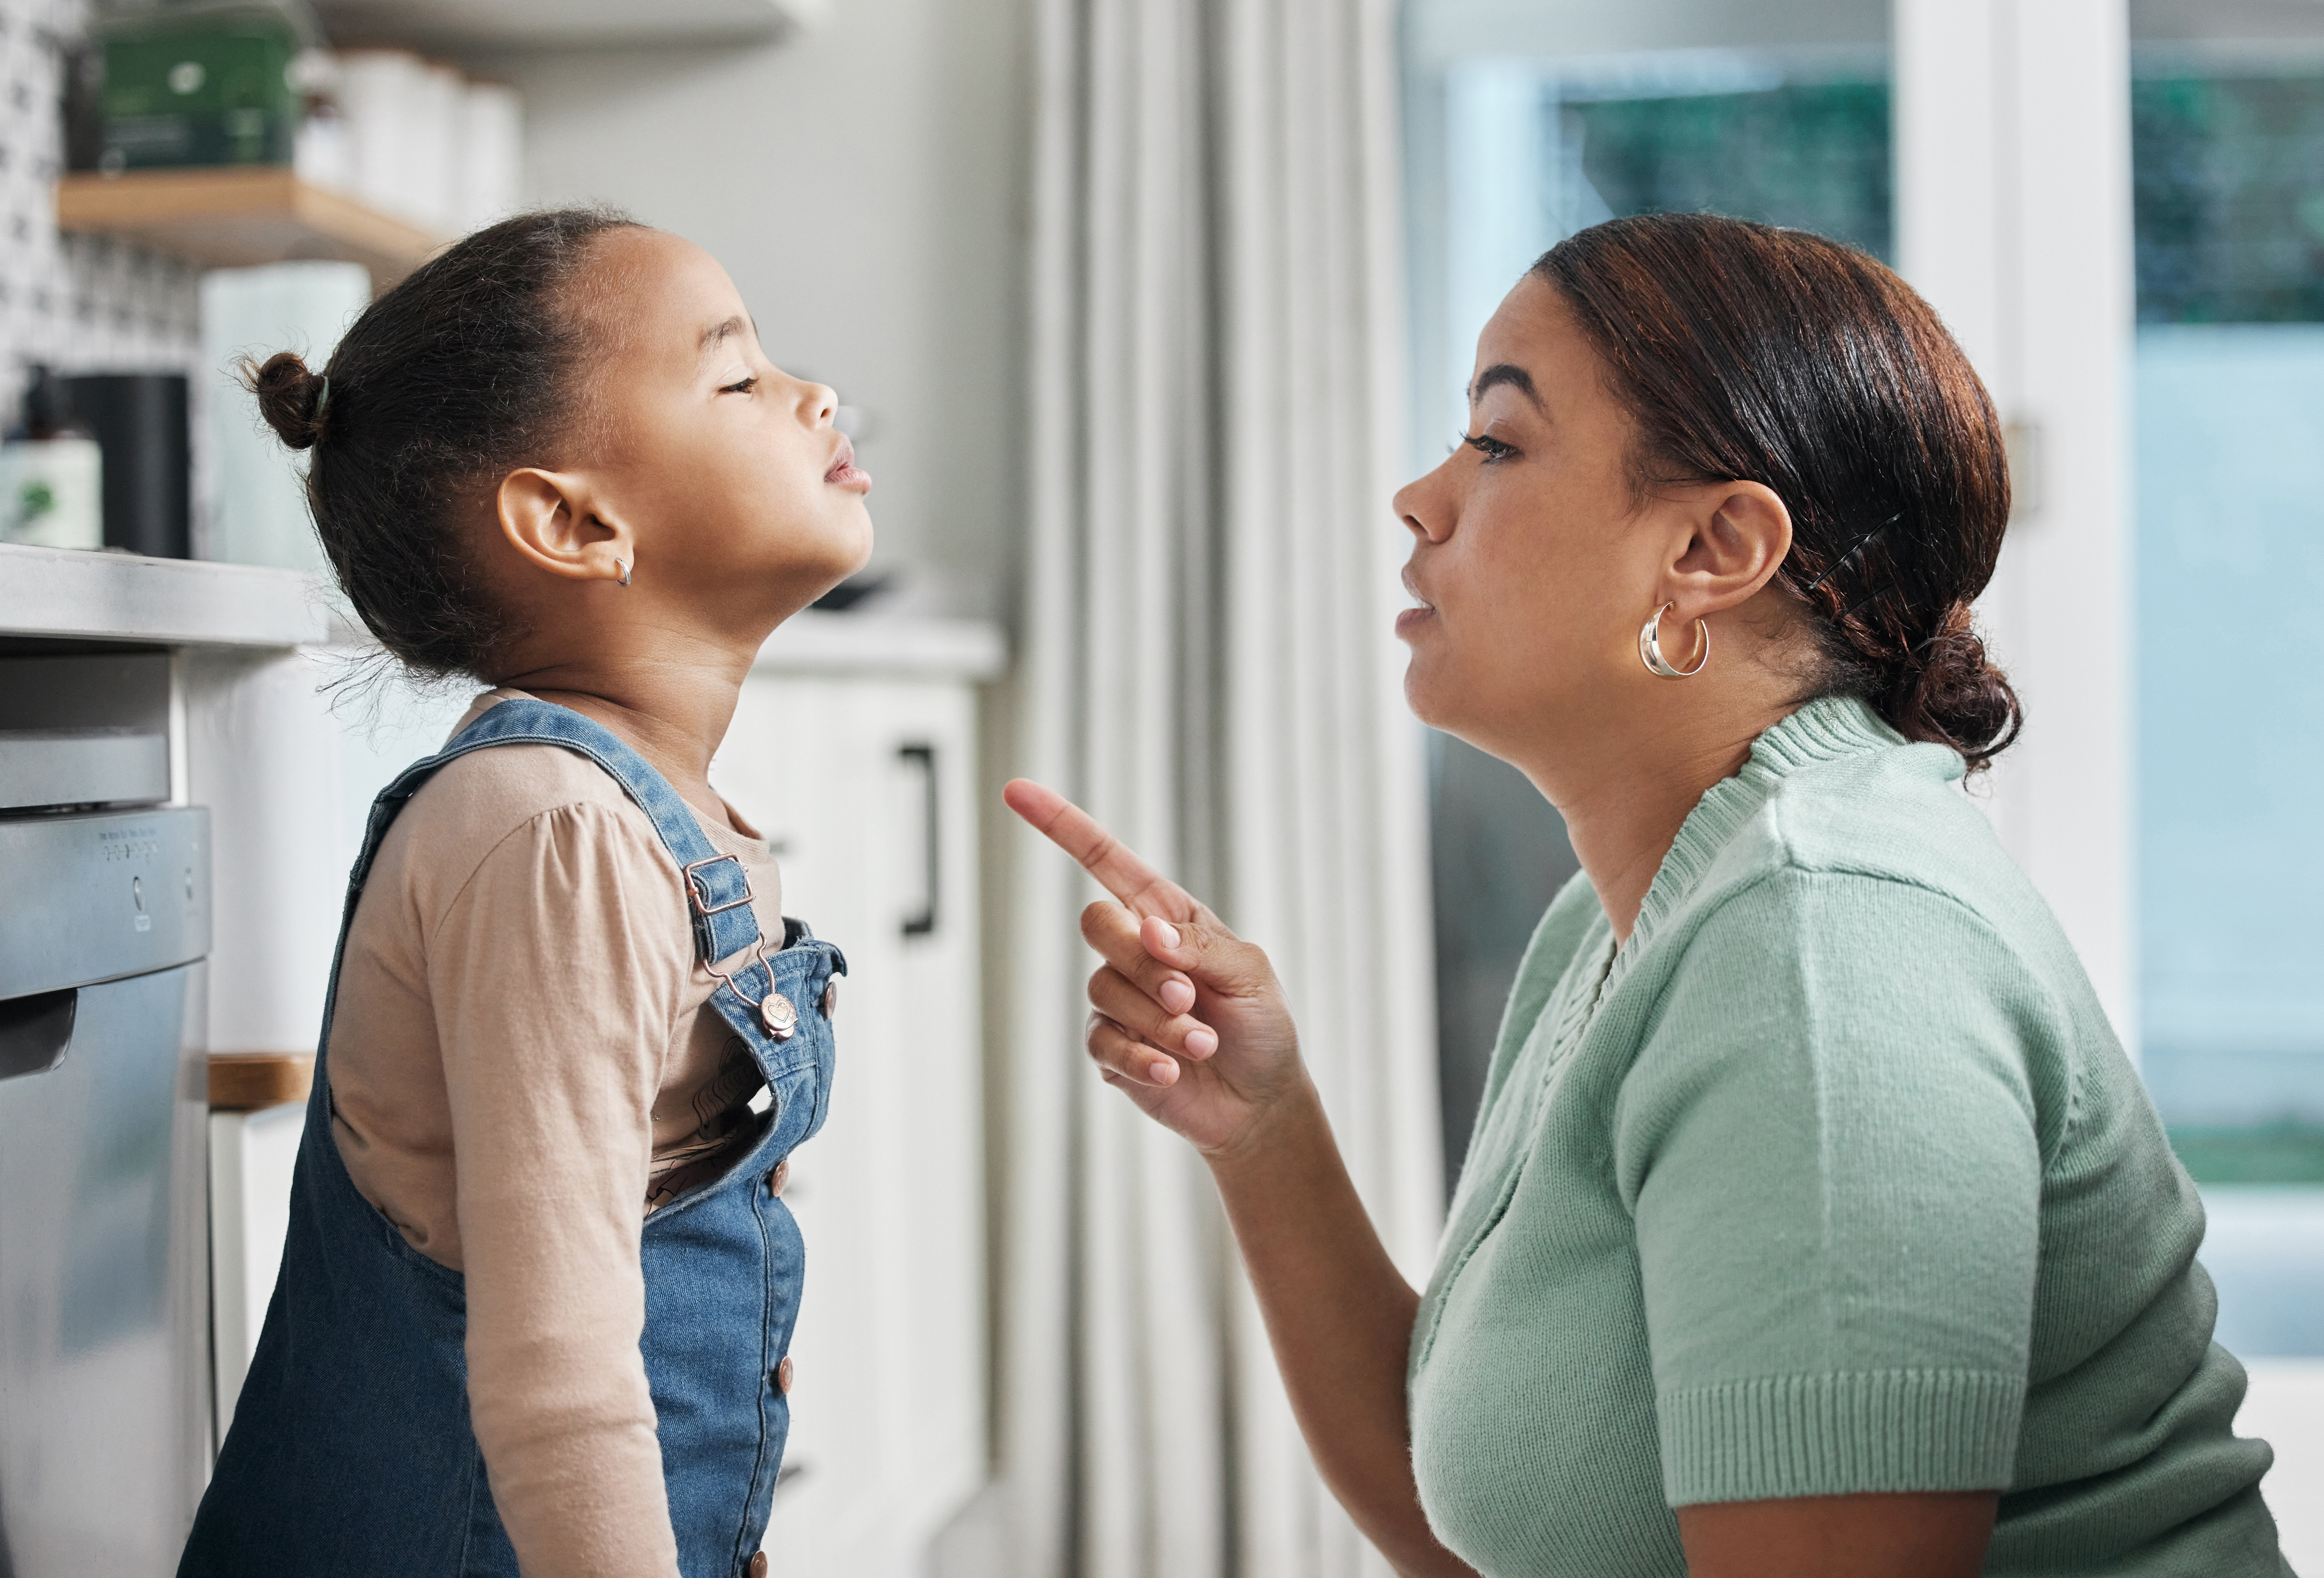 a parent reprimanding a child